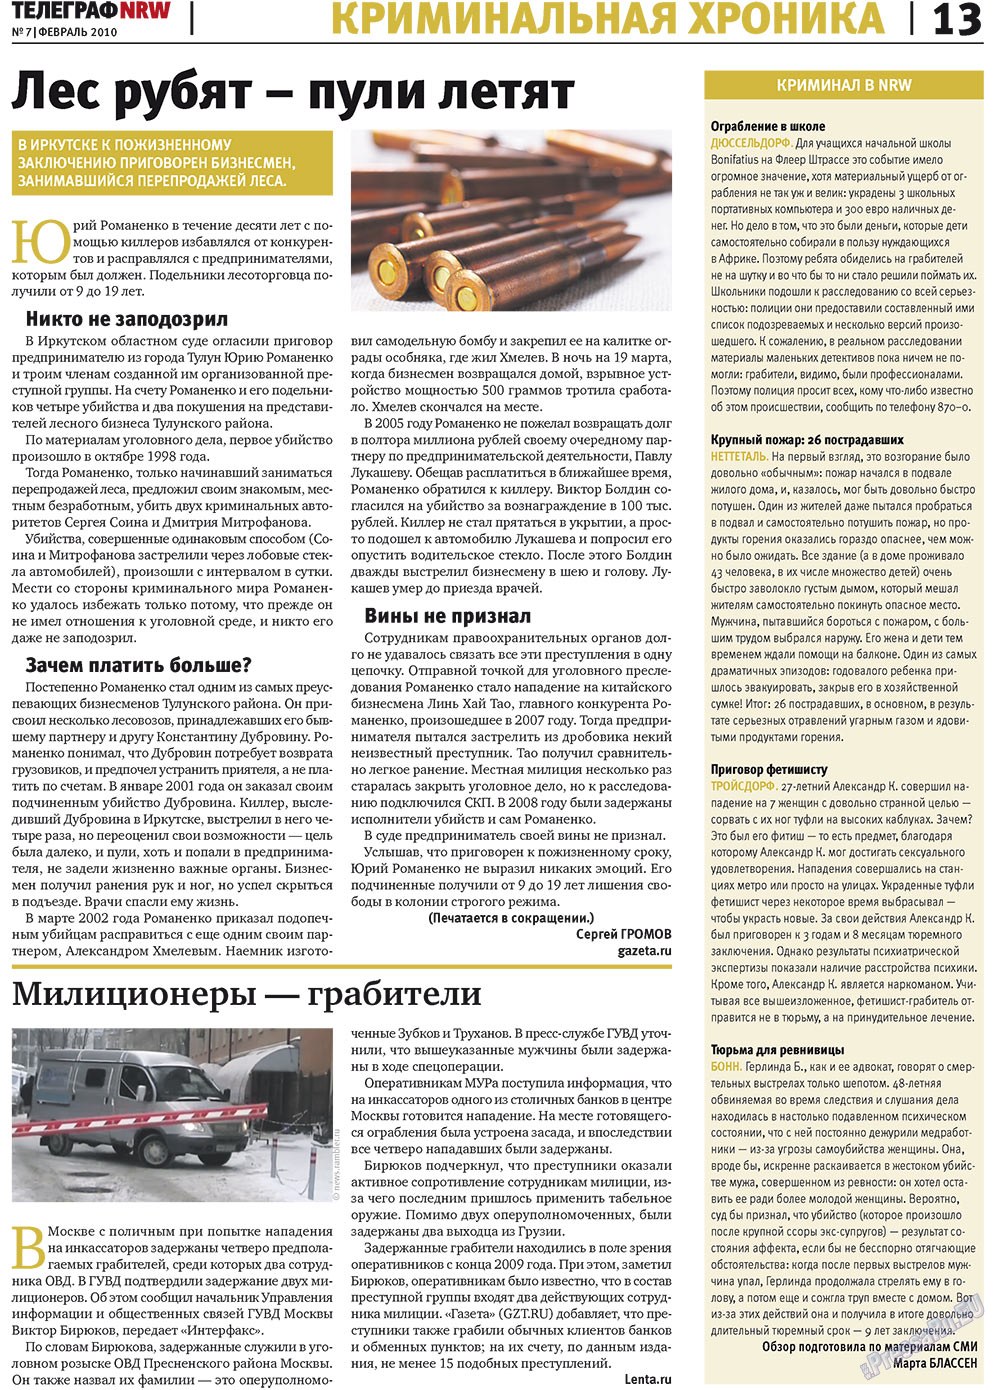 Телеграф NRW (газета). 2010 год, номер 2, стр. 13